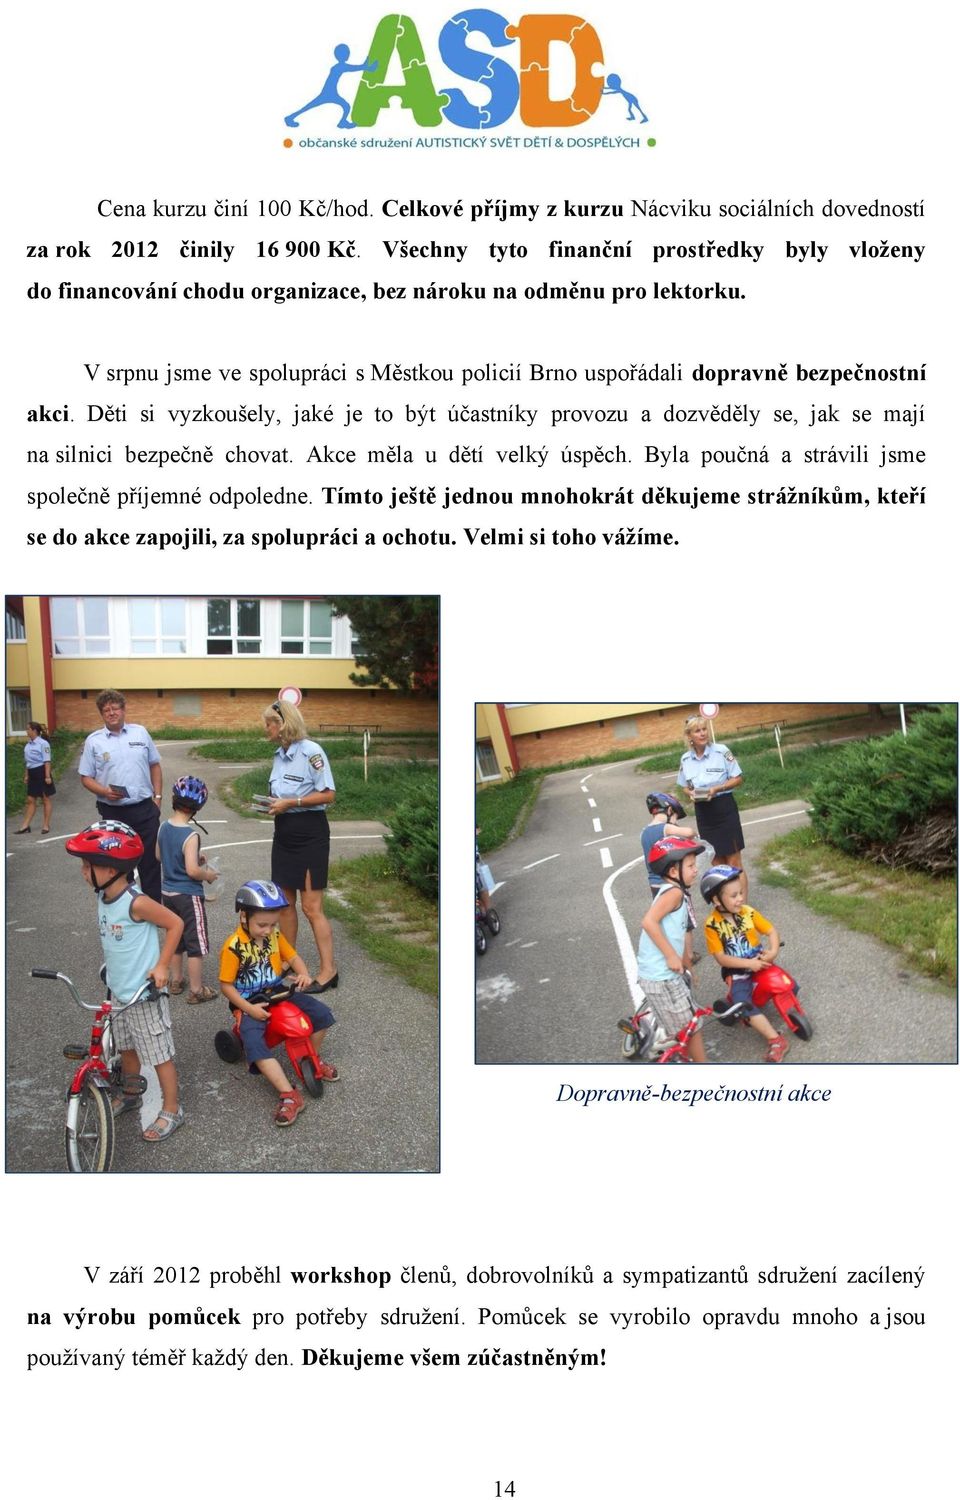 V srpnu jsme ve spolupráci s Městkou policií Brno uspořádali dopravně bezpečnostní akci. Děti si vyzkoušely, jaké je to být účastníky provozu a dozvěděly se, jak se mají na silnici bezpečně chovat.